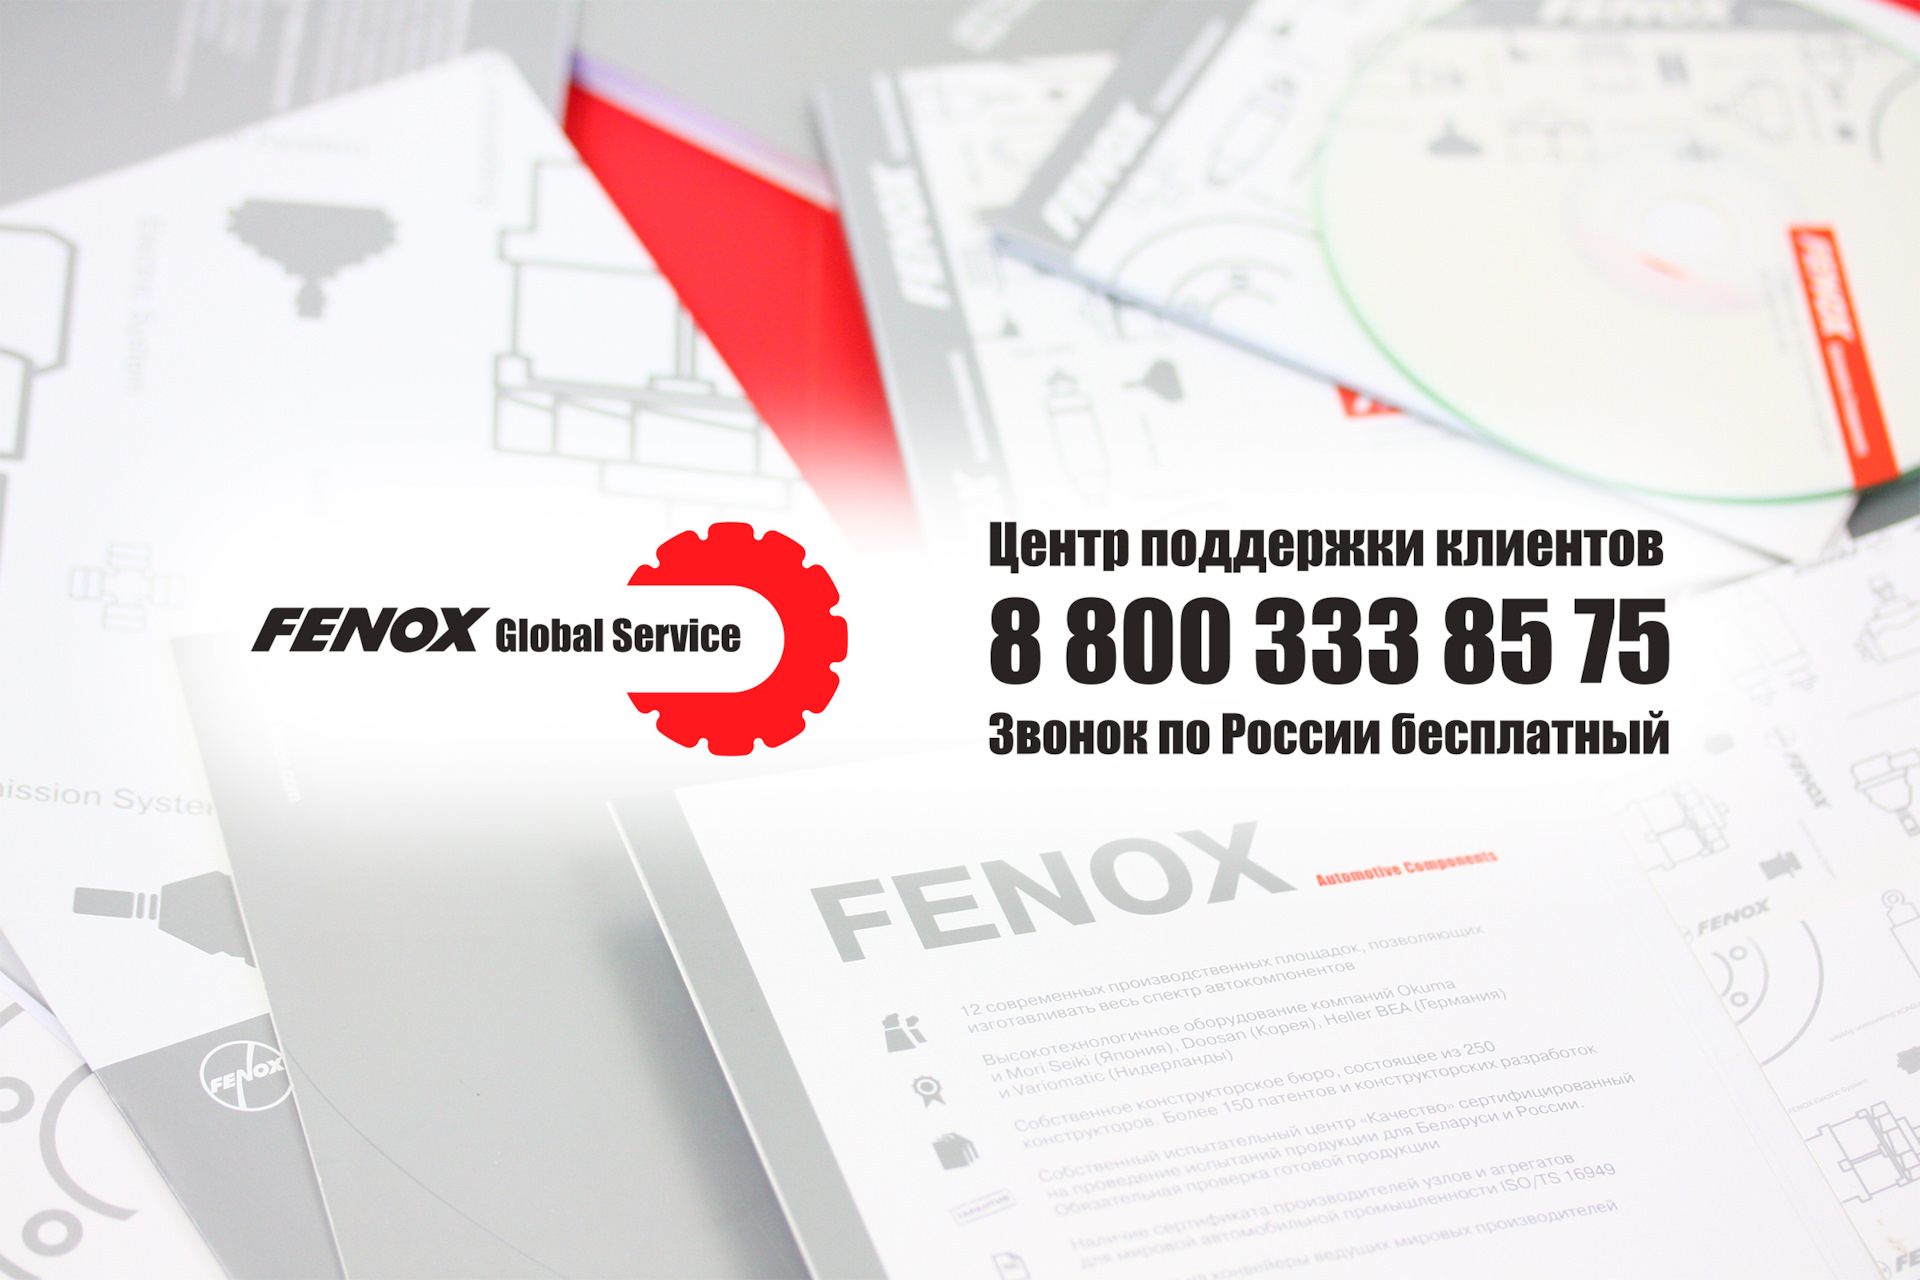 Сервис 06. FENOX реклама.